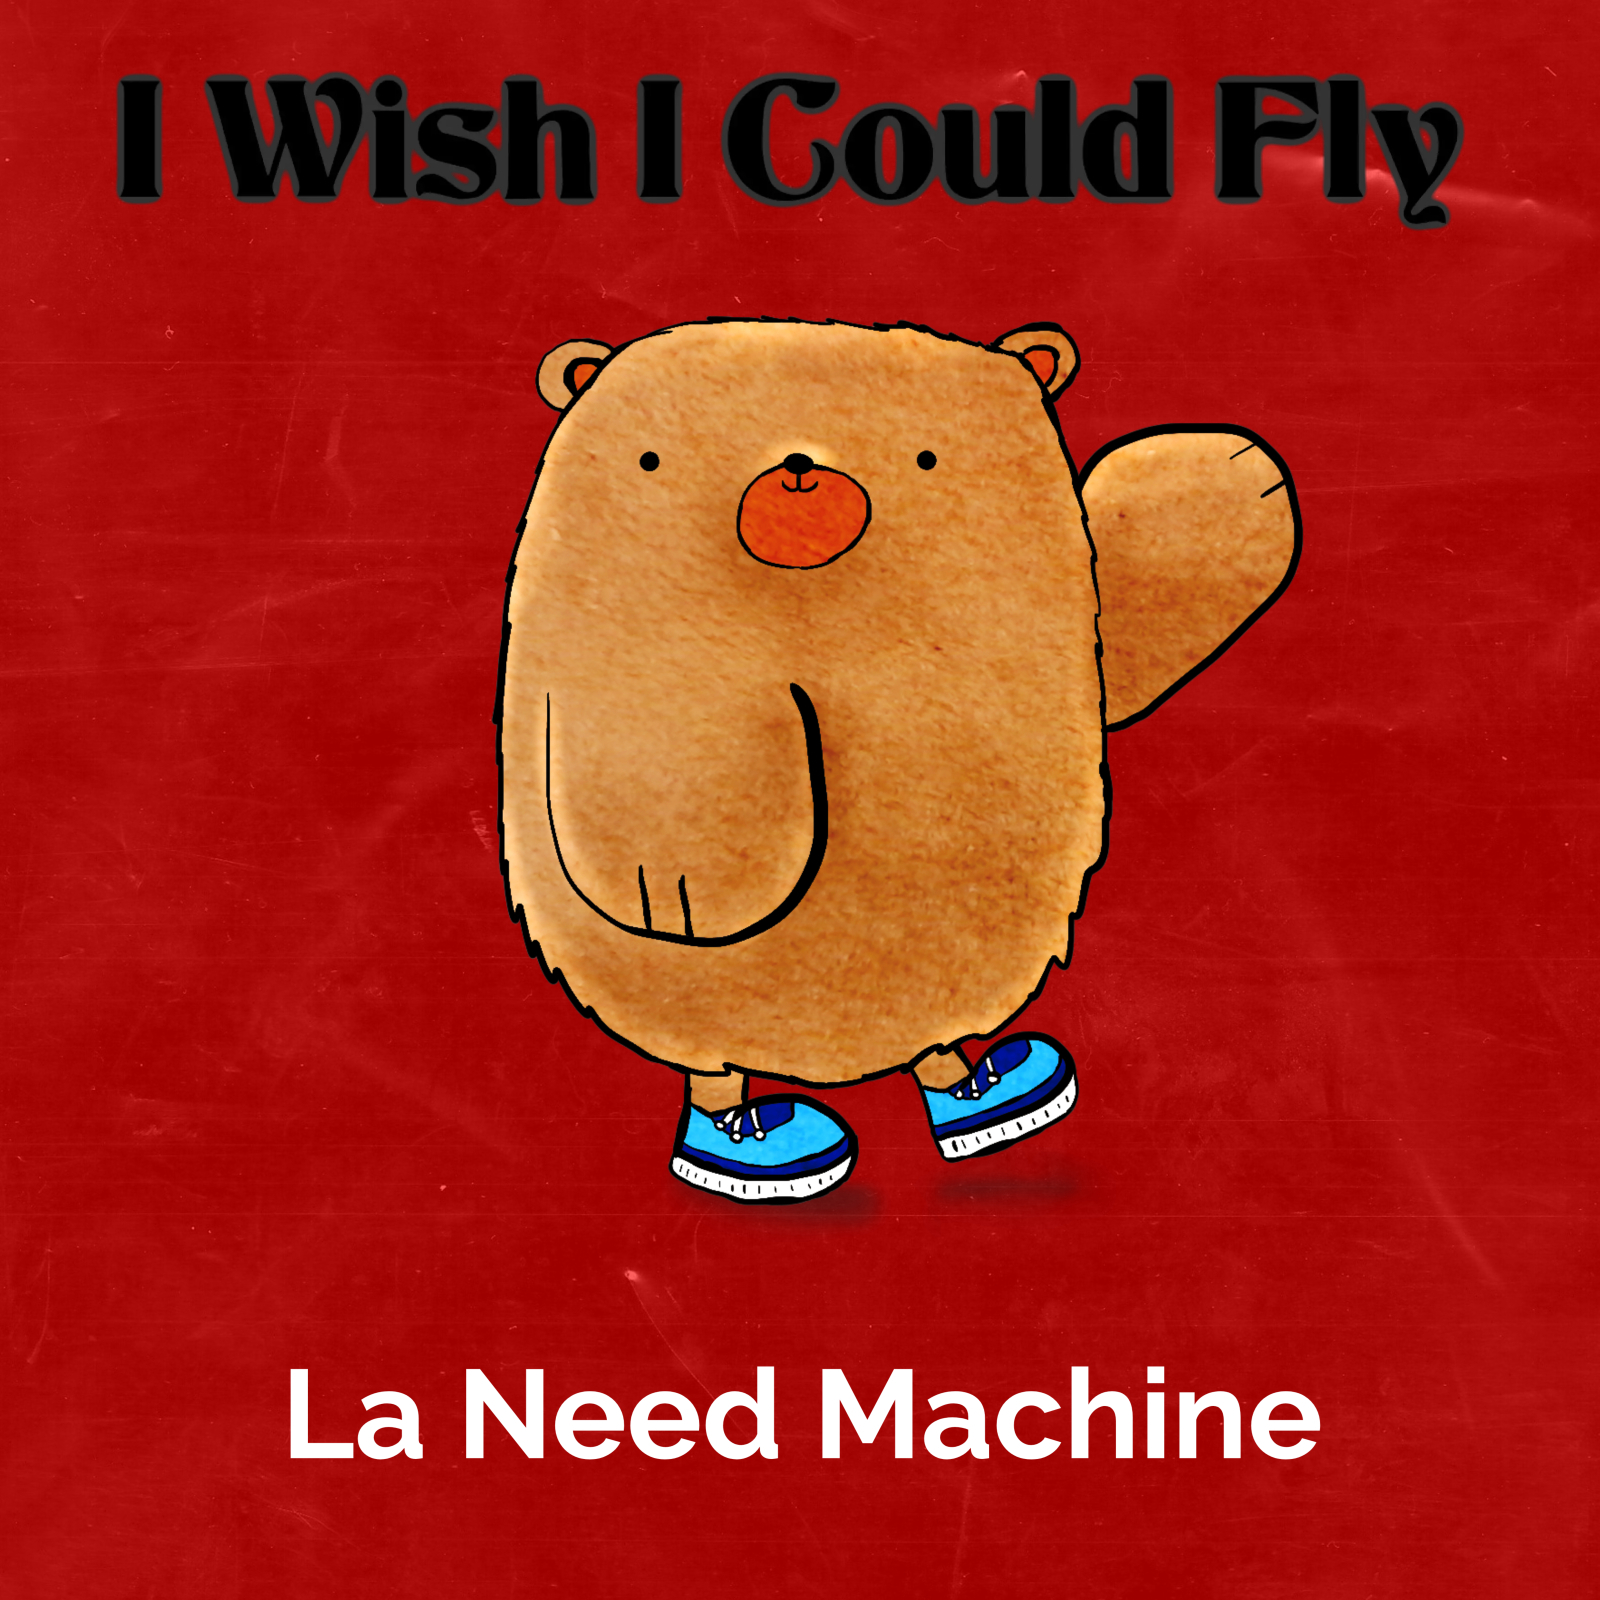 La Need Machine – “I Wish I Could Fly”